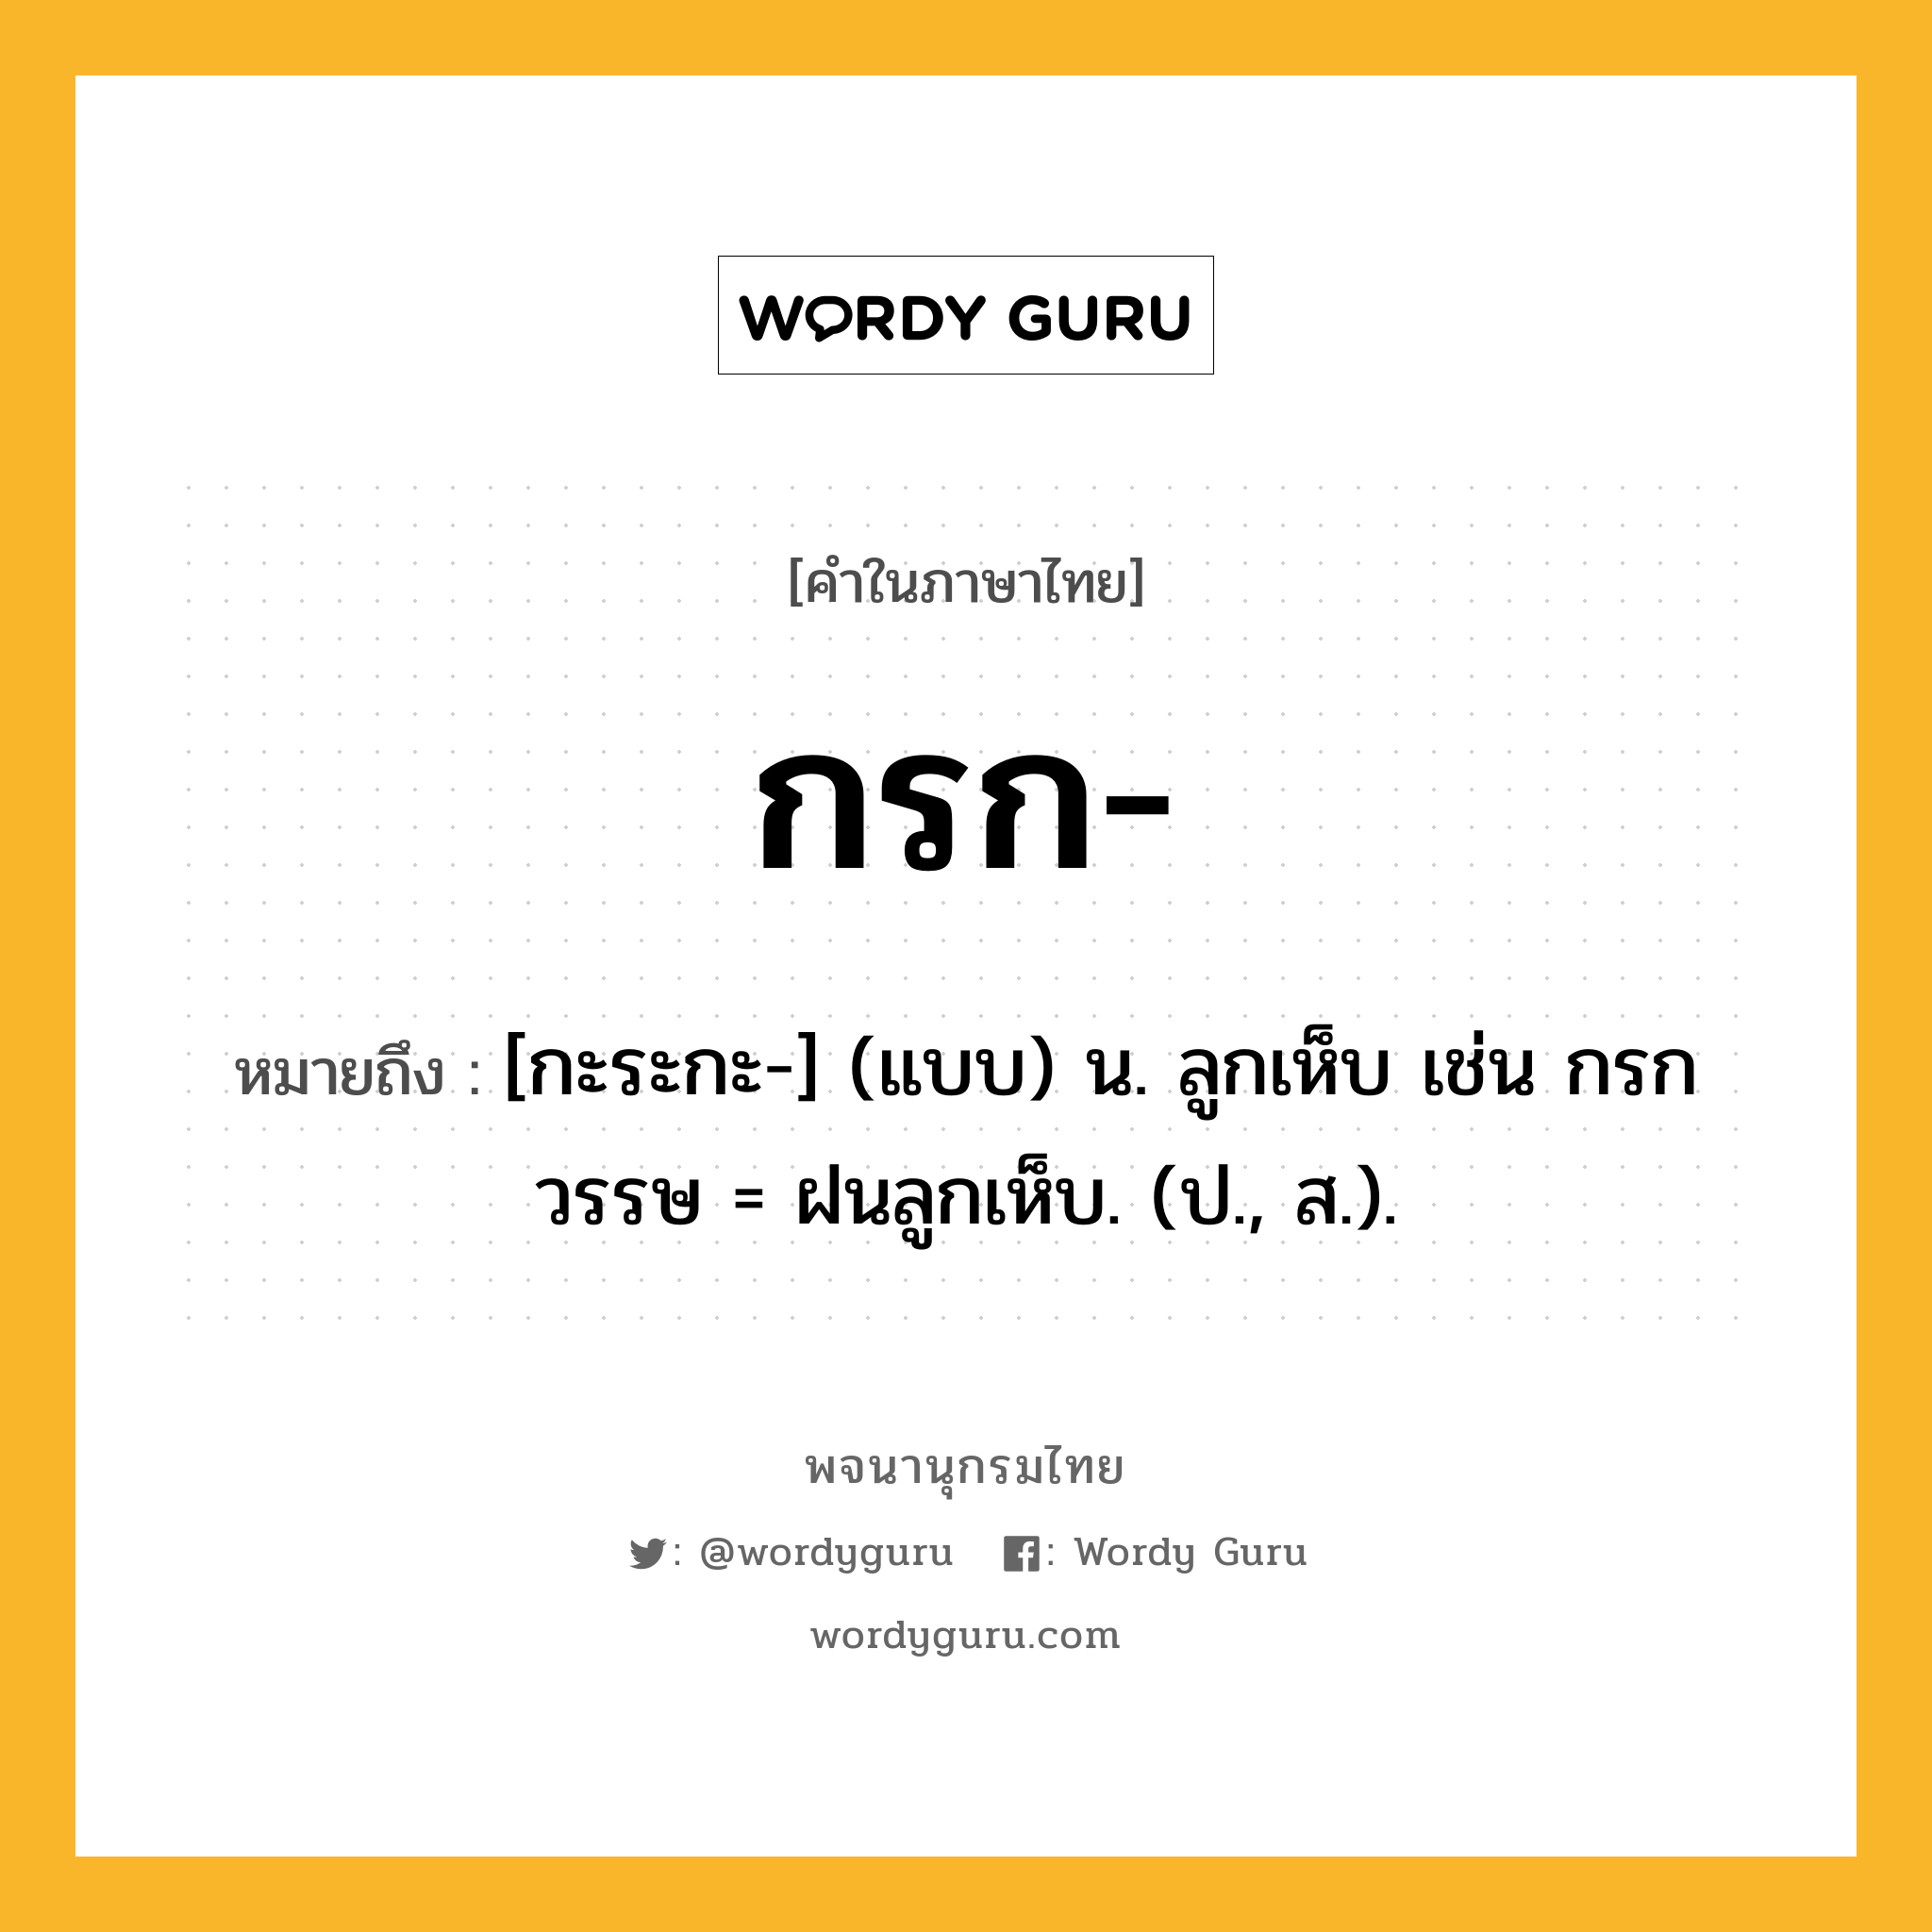 กรก ความหมาย หมายถึงอะไร?, คำในภาษาไทย กรก- หมายถึง [กะระกะ-] (แบบ) น. ลูกเห็บ เช่น กรกวรรษ = ฝนลูกเห็บ. (ป., ส.).